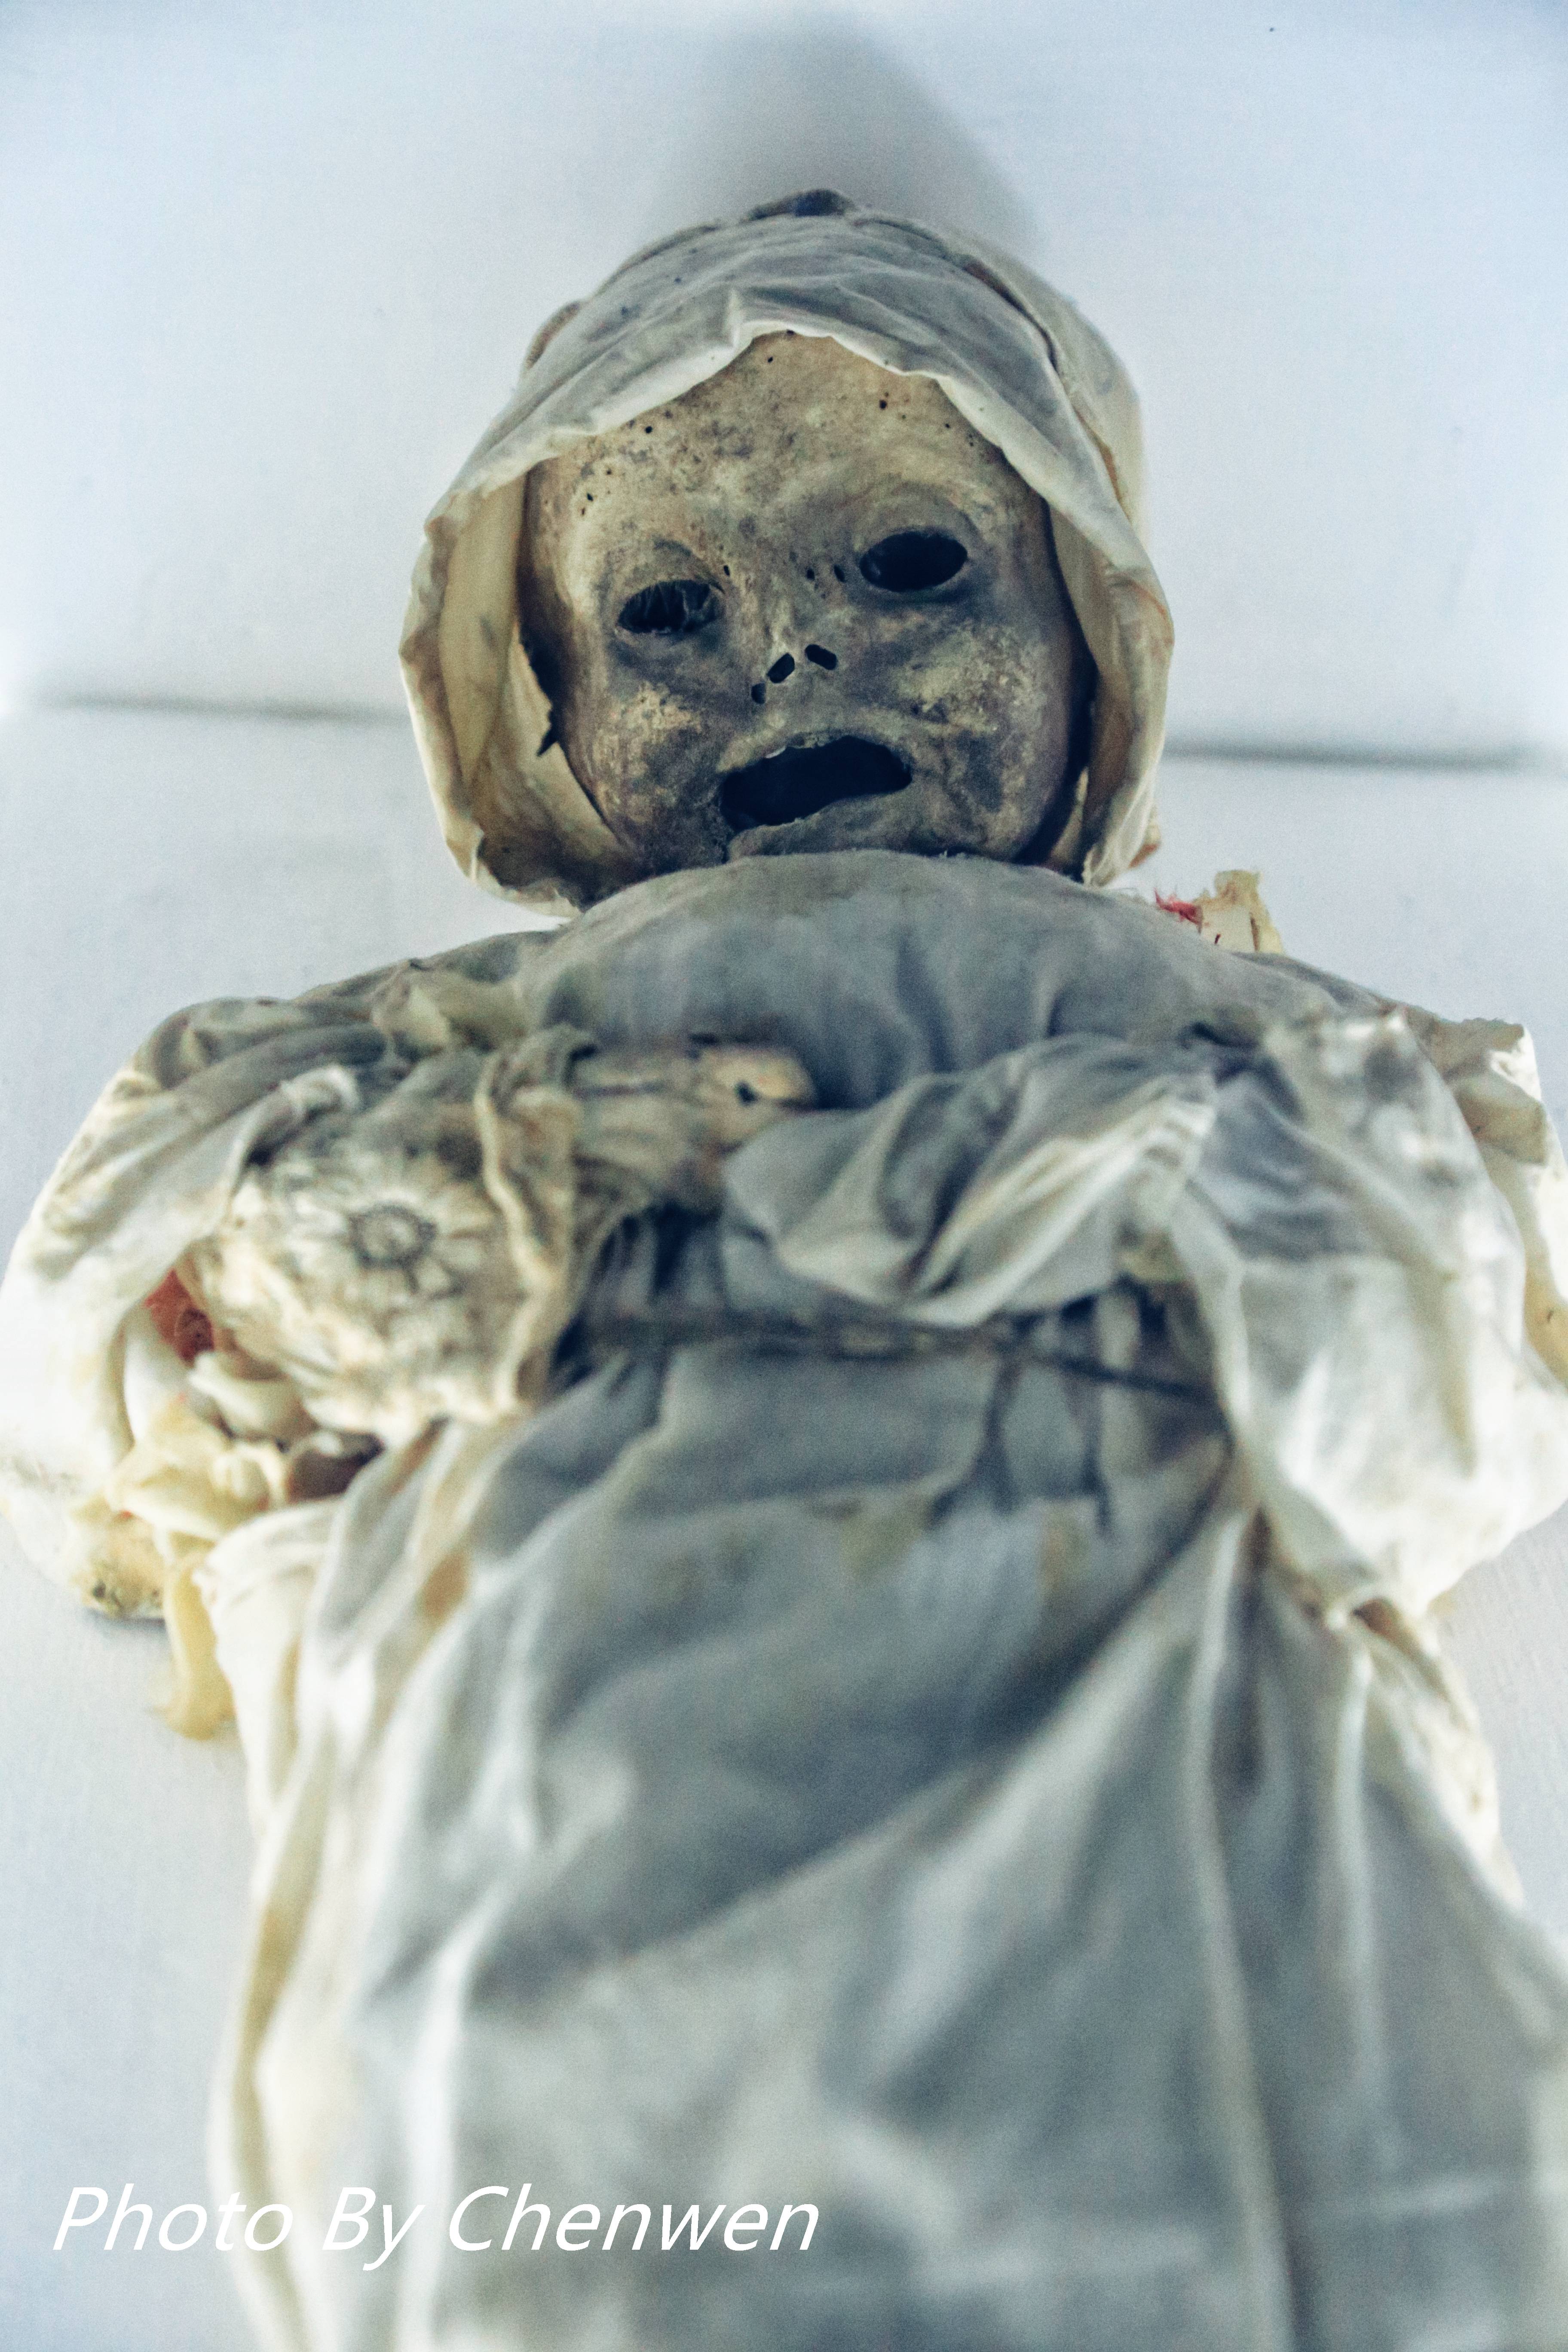 博物馆里还藏着世界上最小的木乃伊,他是一名即将出生的男婴,在抛妇产